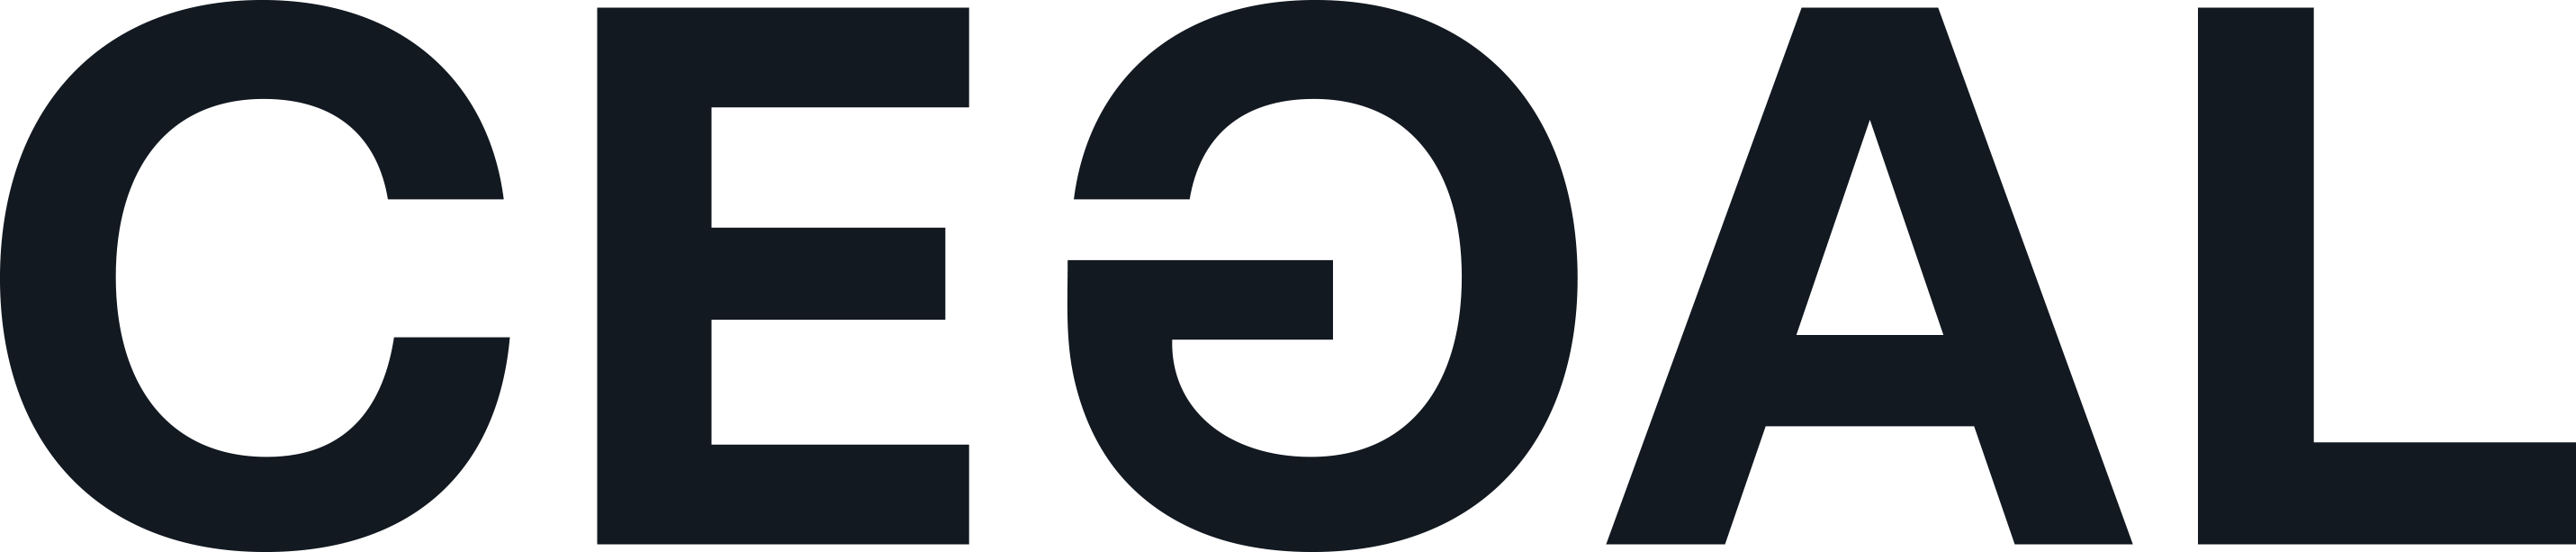 CEGAL logo